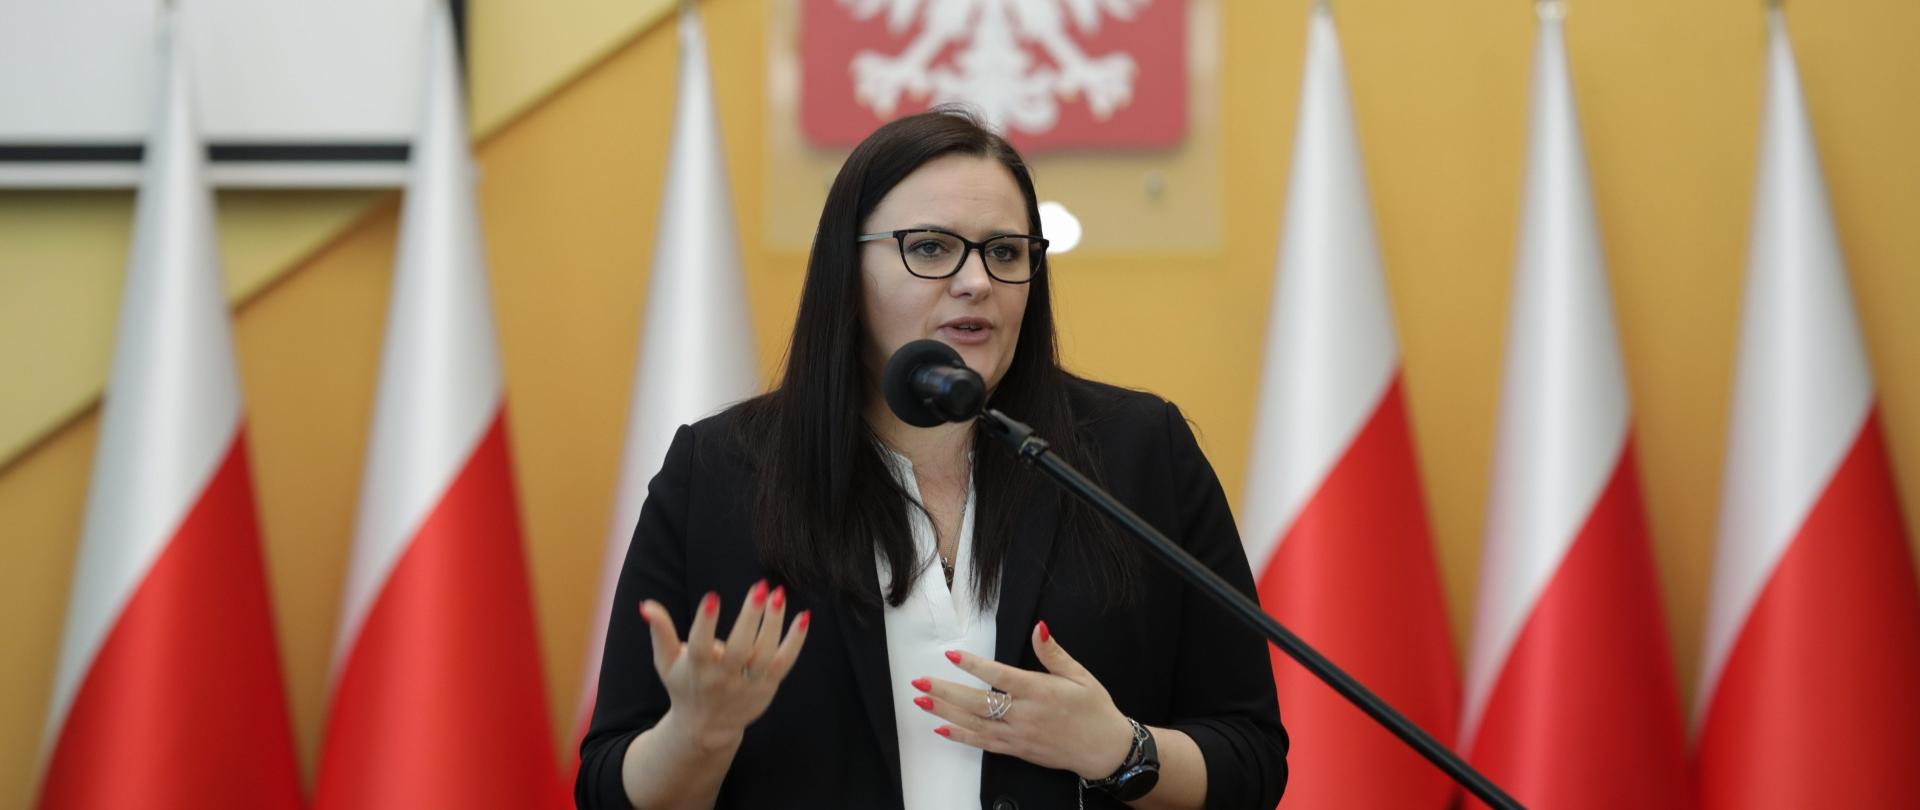 Minister Małgorzata Jarosińska-Jedynak stoi przy mównicy, w tle sześć flag polskich i godło RP.